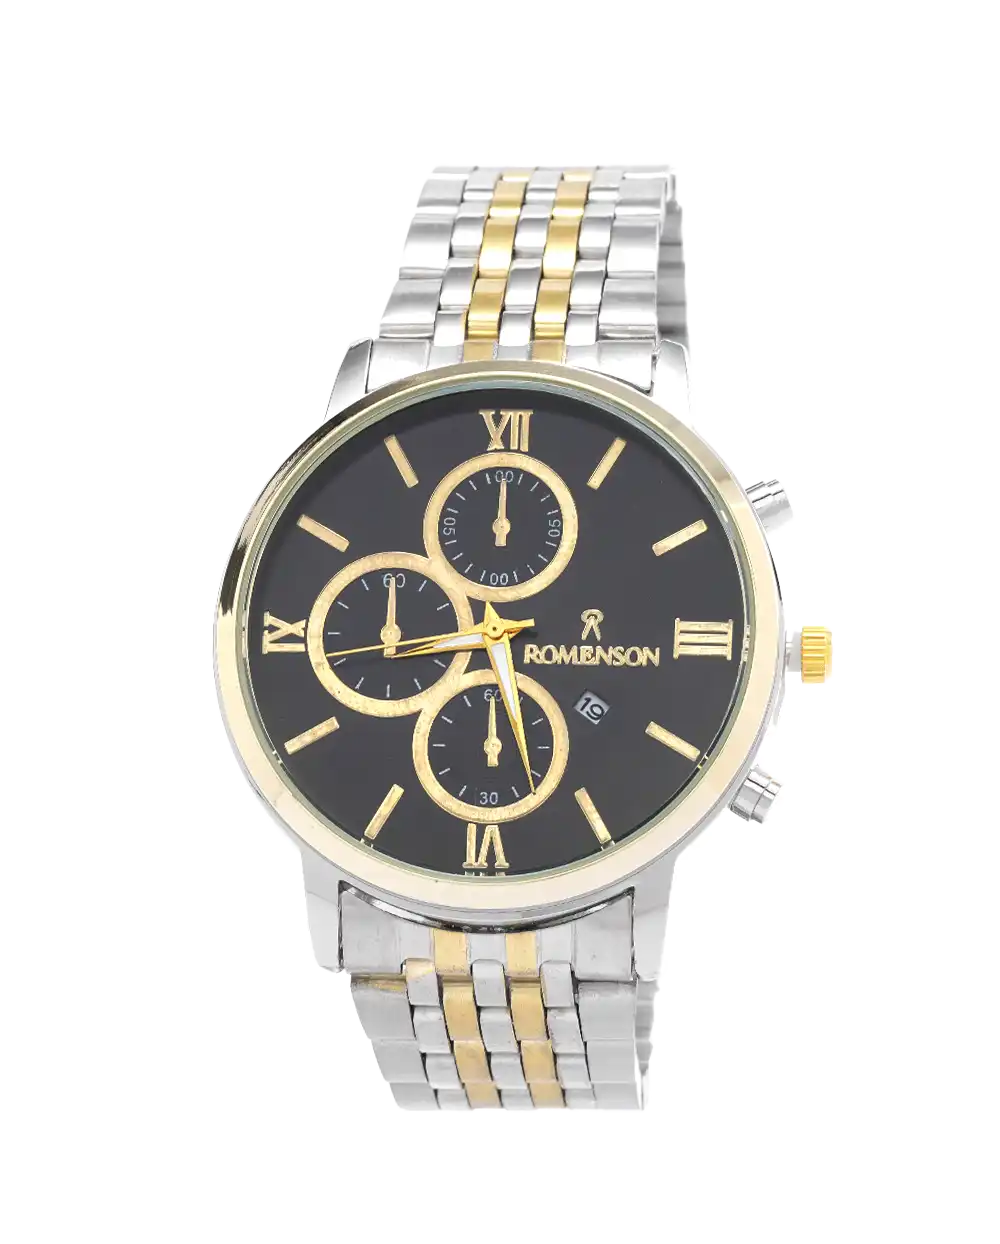 خرید ساعت مچی مردانه رومانسون ROMANSON مدل 1726 صفحه سفید و بند نقره ای طلایی با بهترین قیمت به همراه ارسال رایگان و جعبه ی ساعت | ساعت romenson